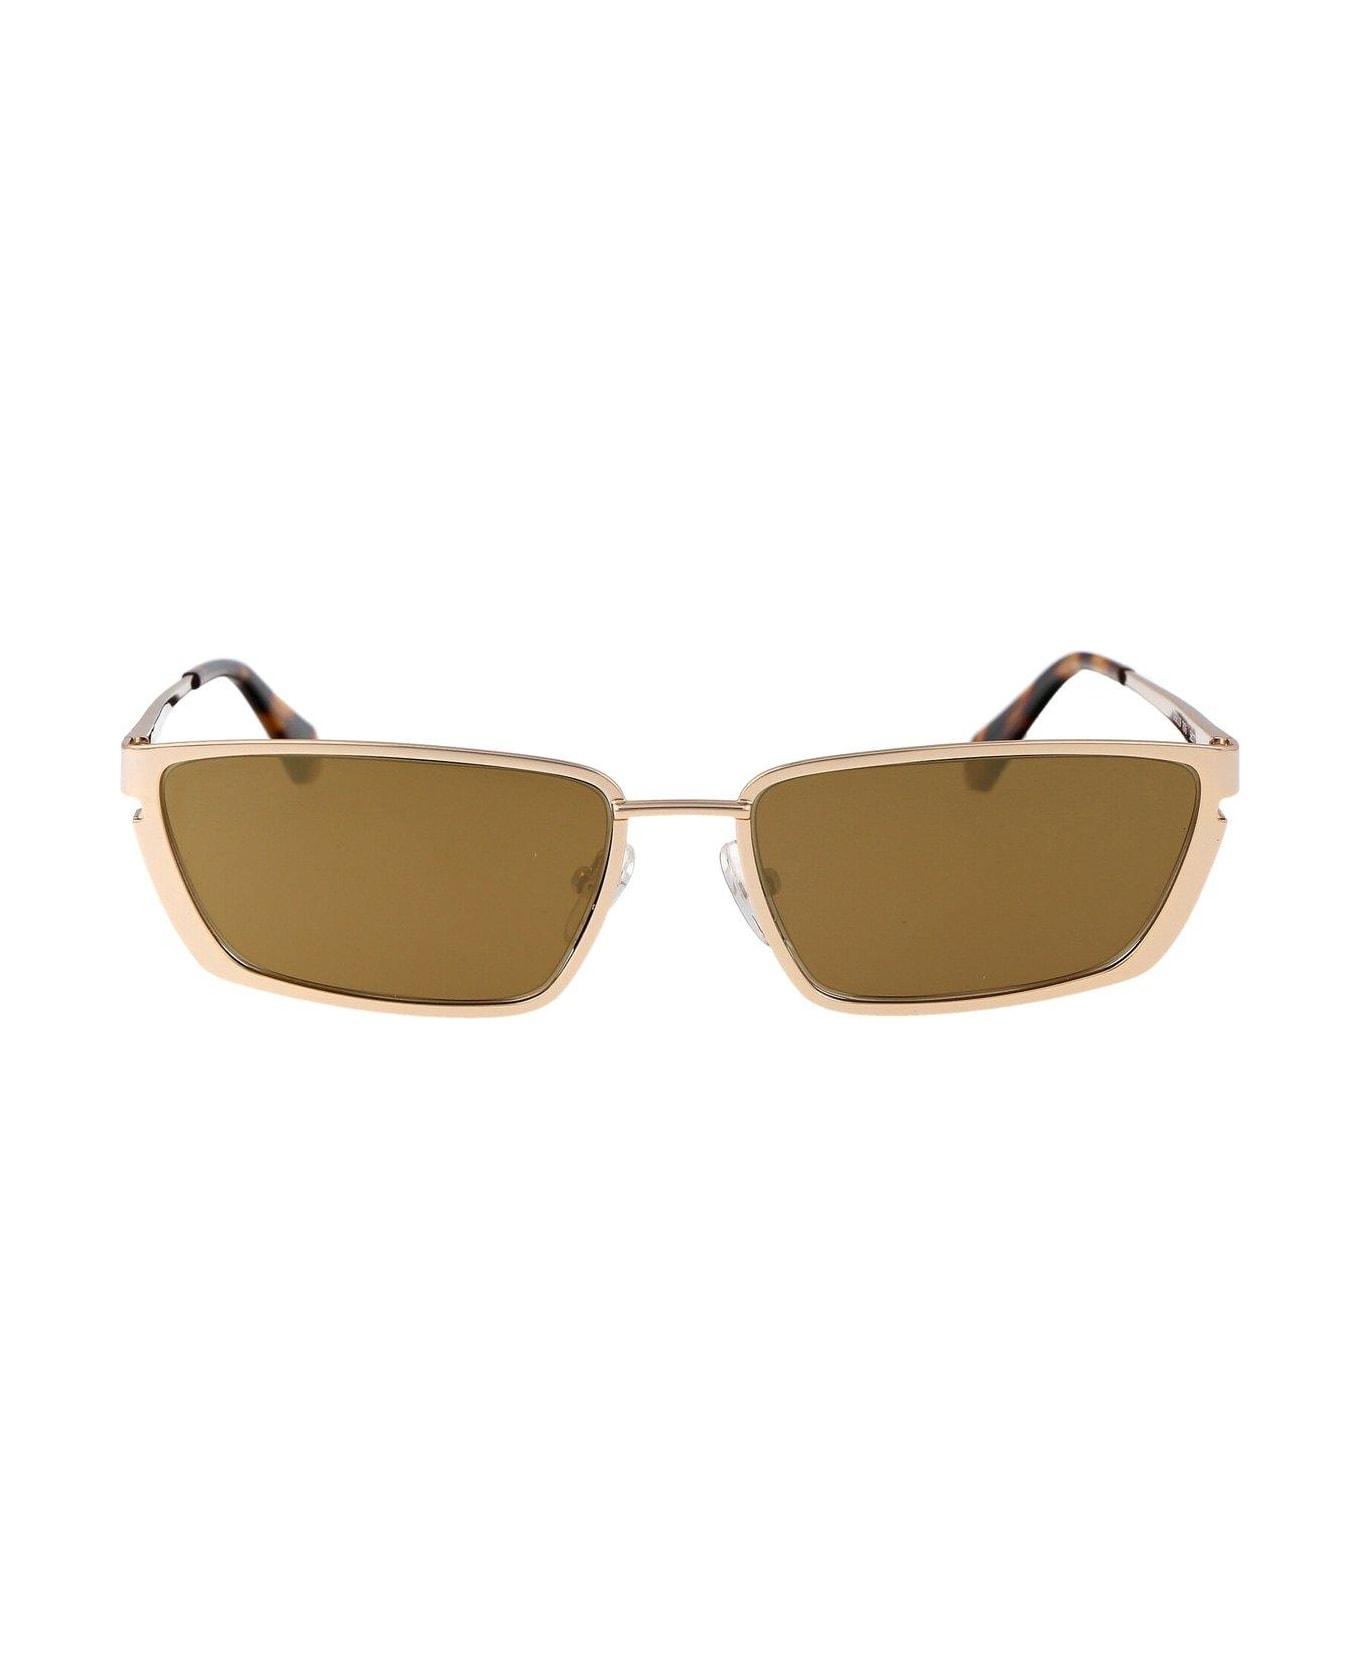 Off-White Richfield Sunglasses - 7676 GOLD GOLD